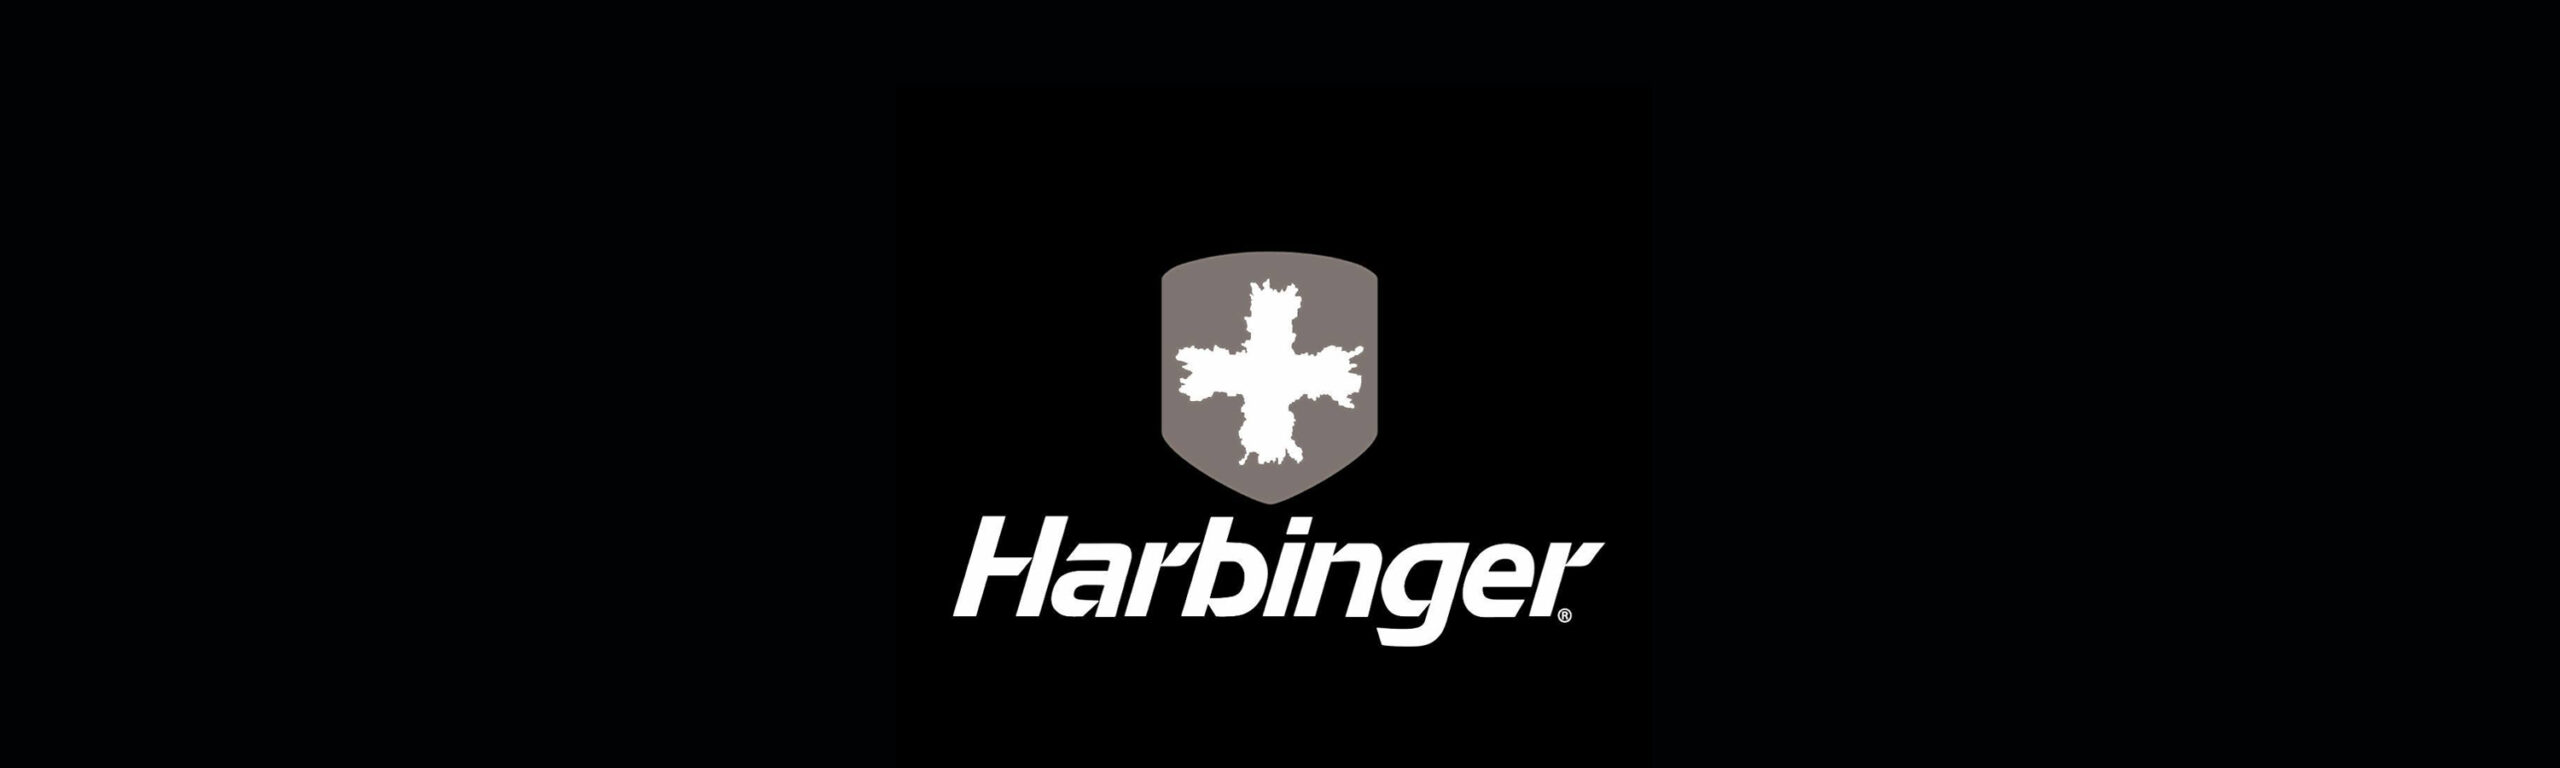 HARBINGER